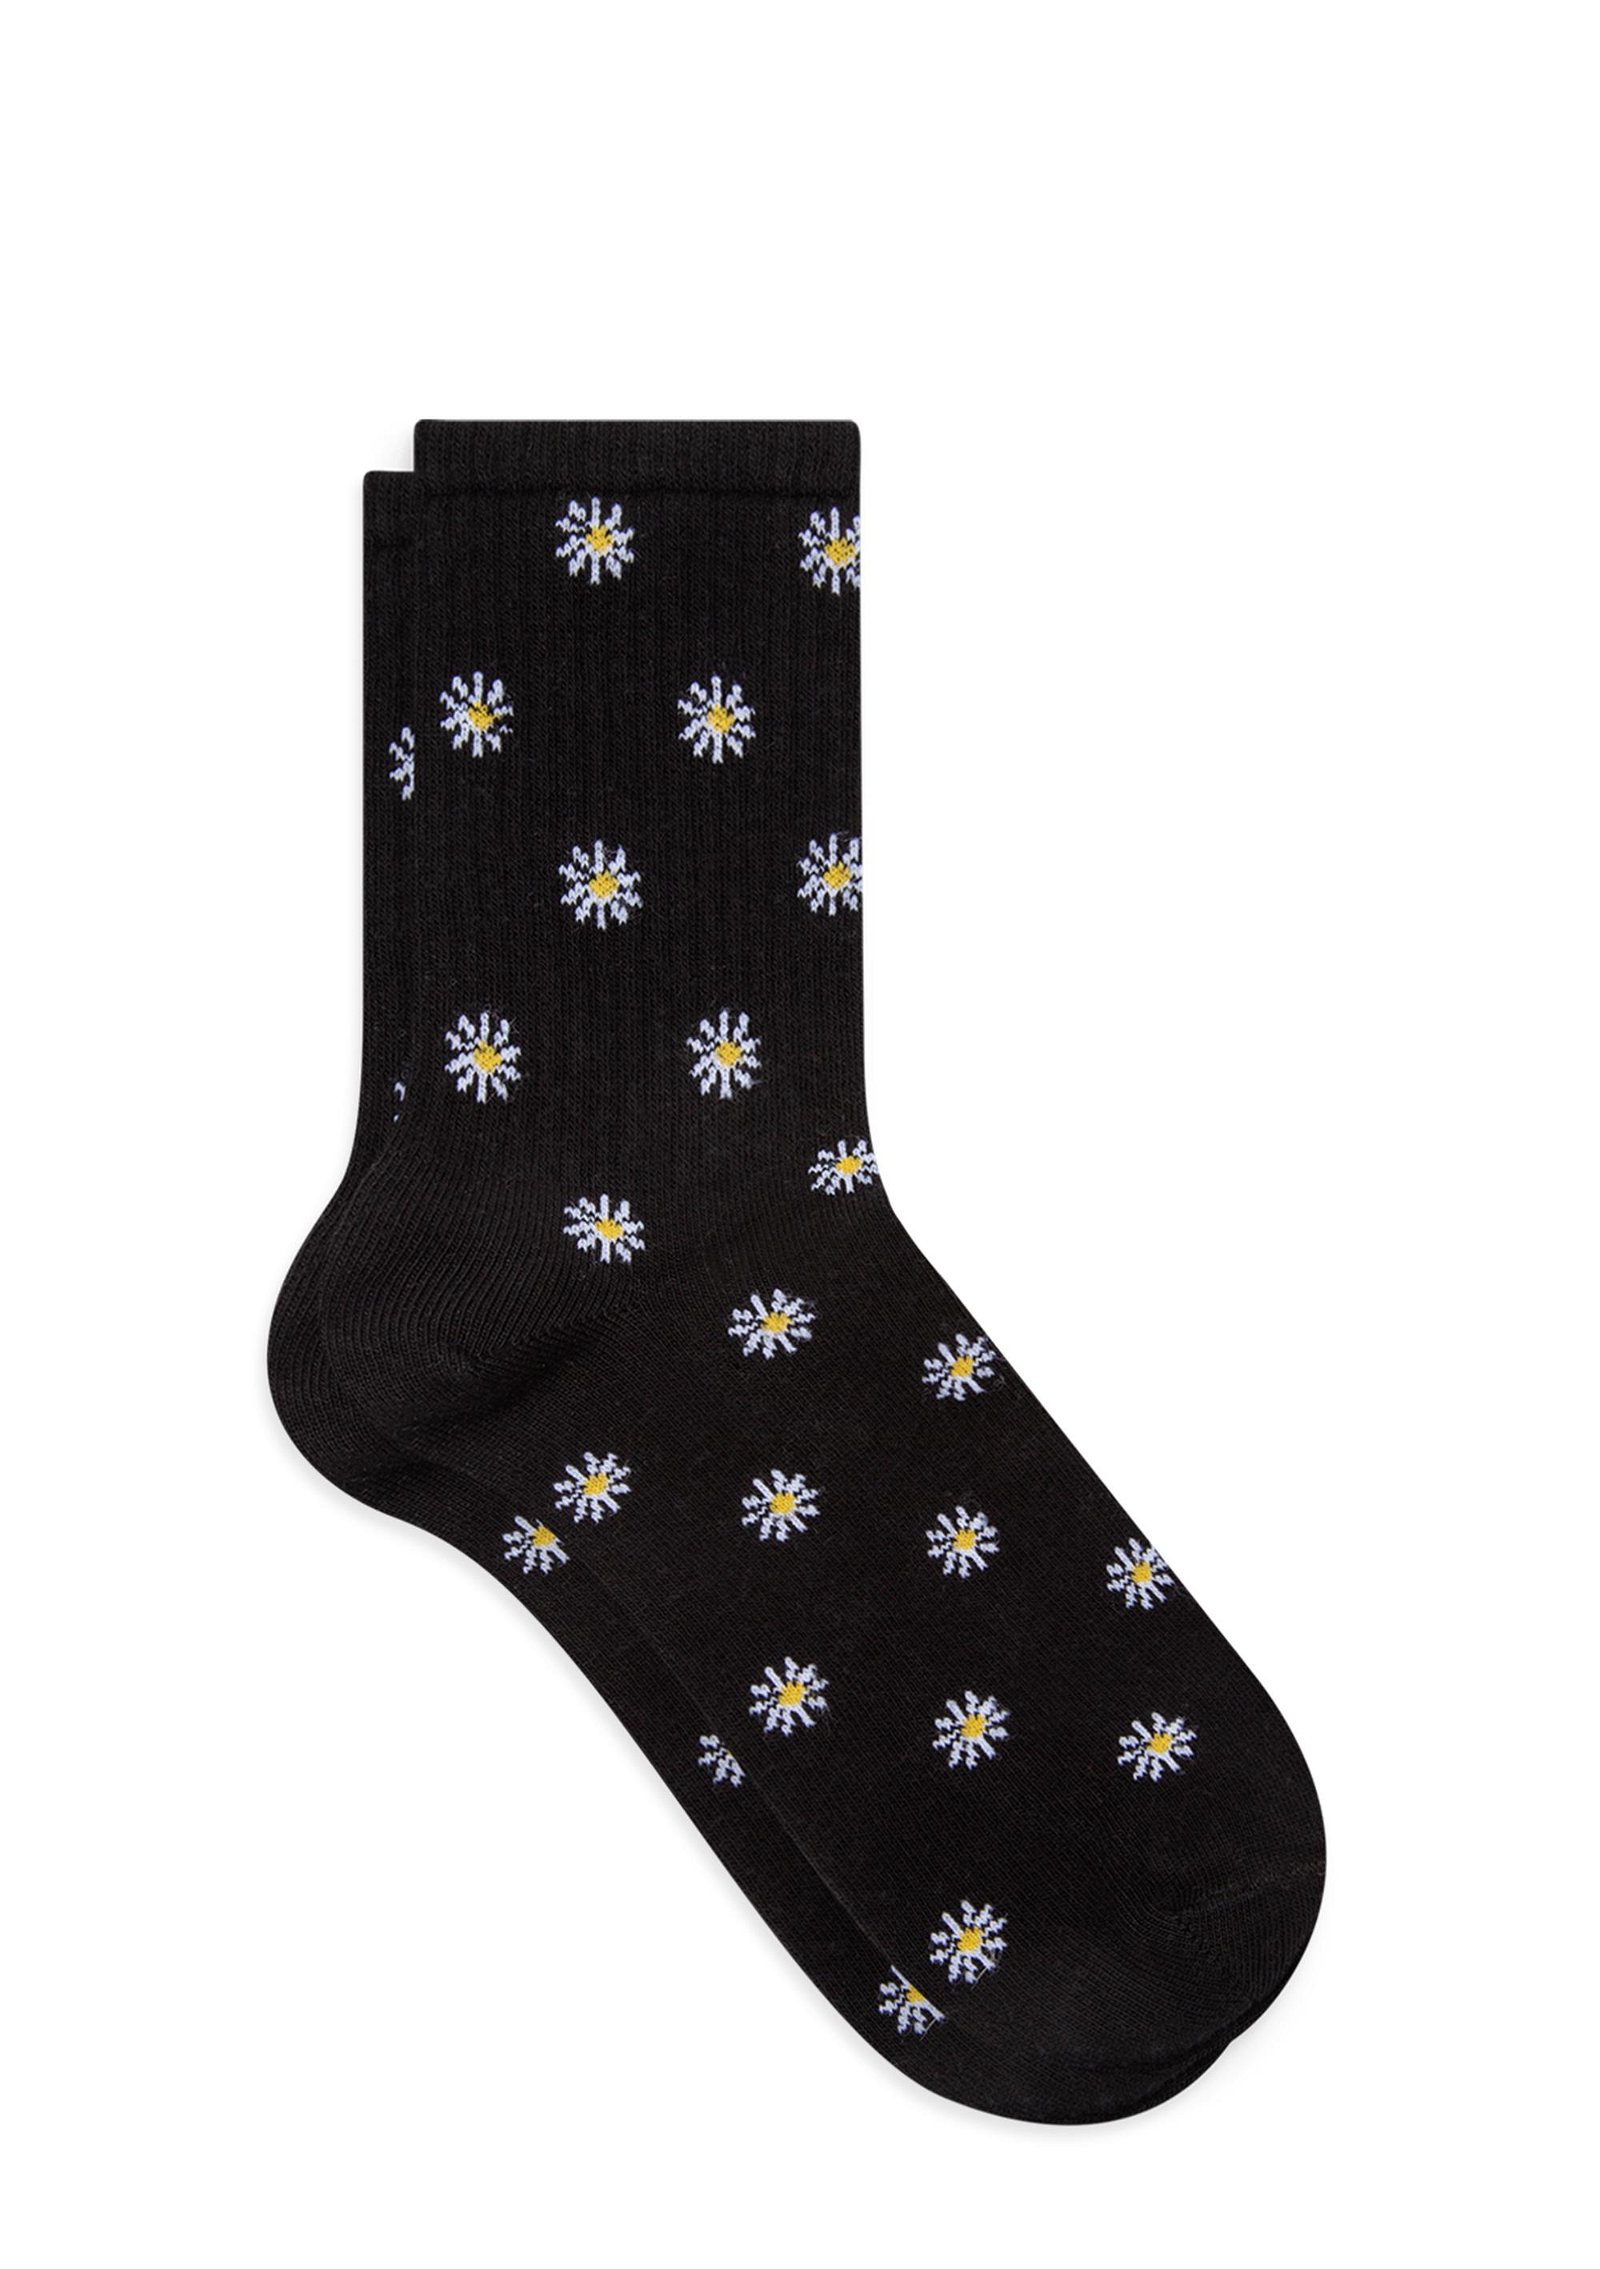 Mavi 3lü Çiçekli Soket Çorap Seti 1912028-620